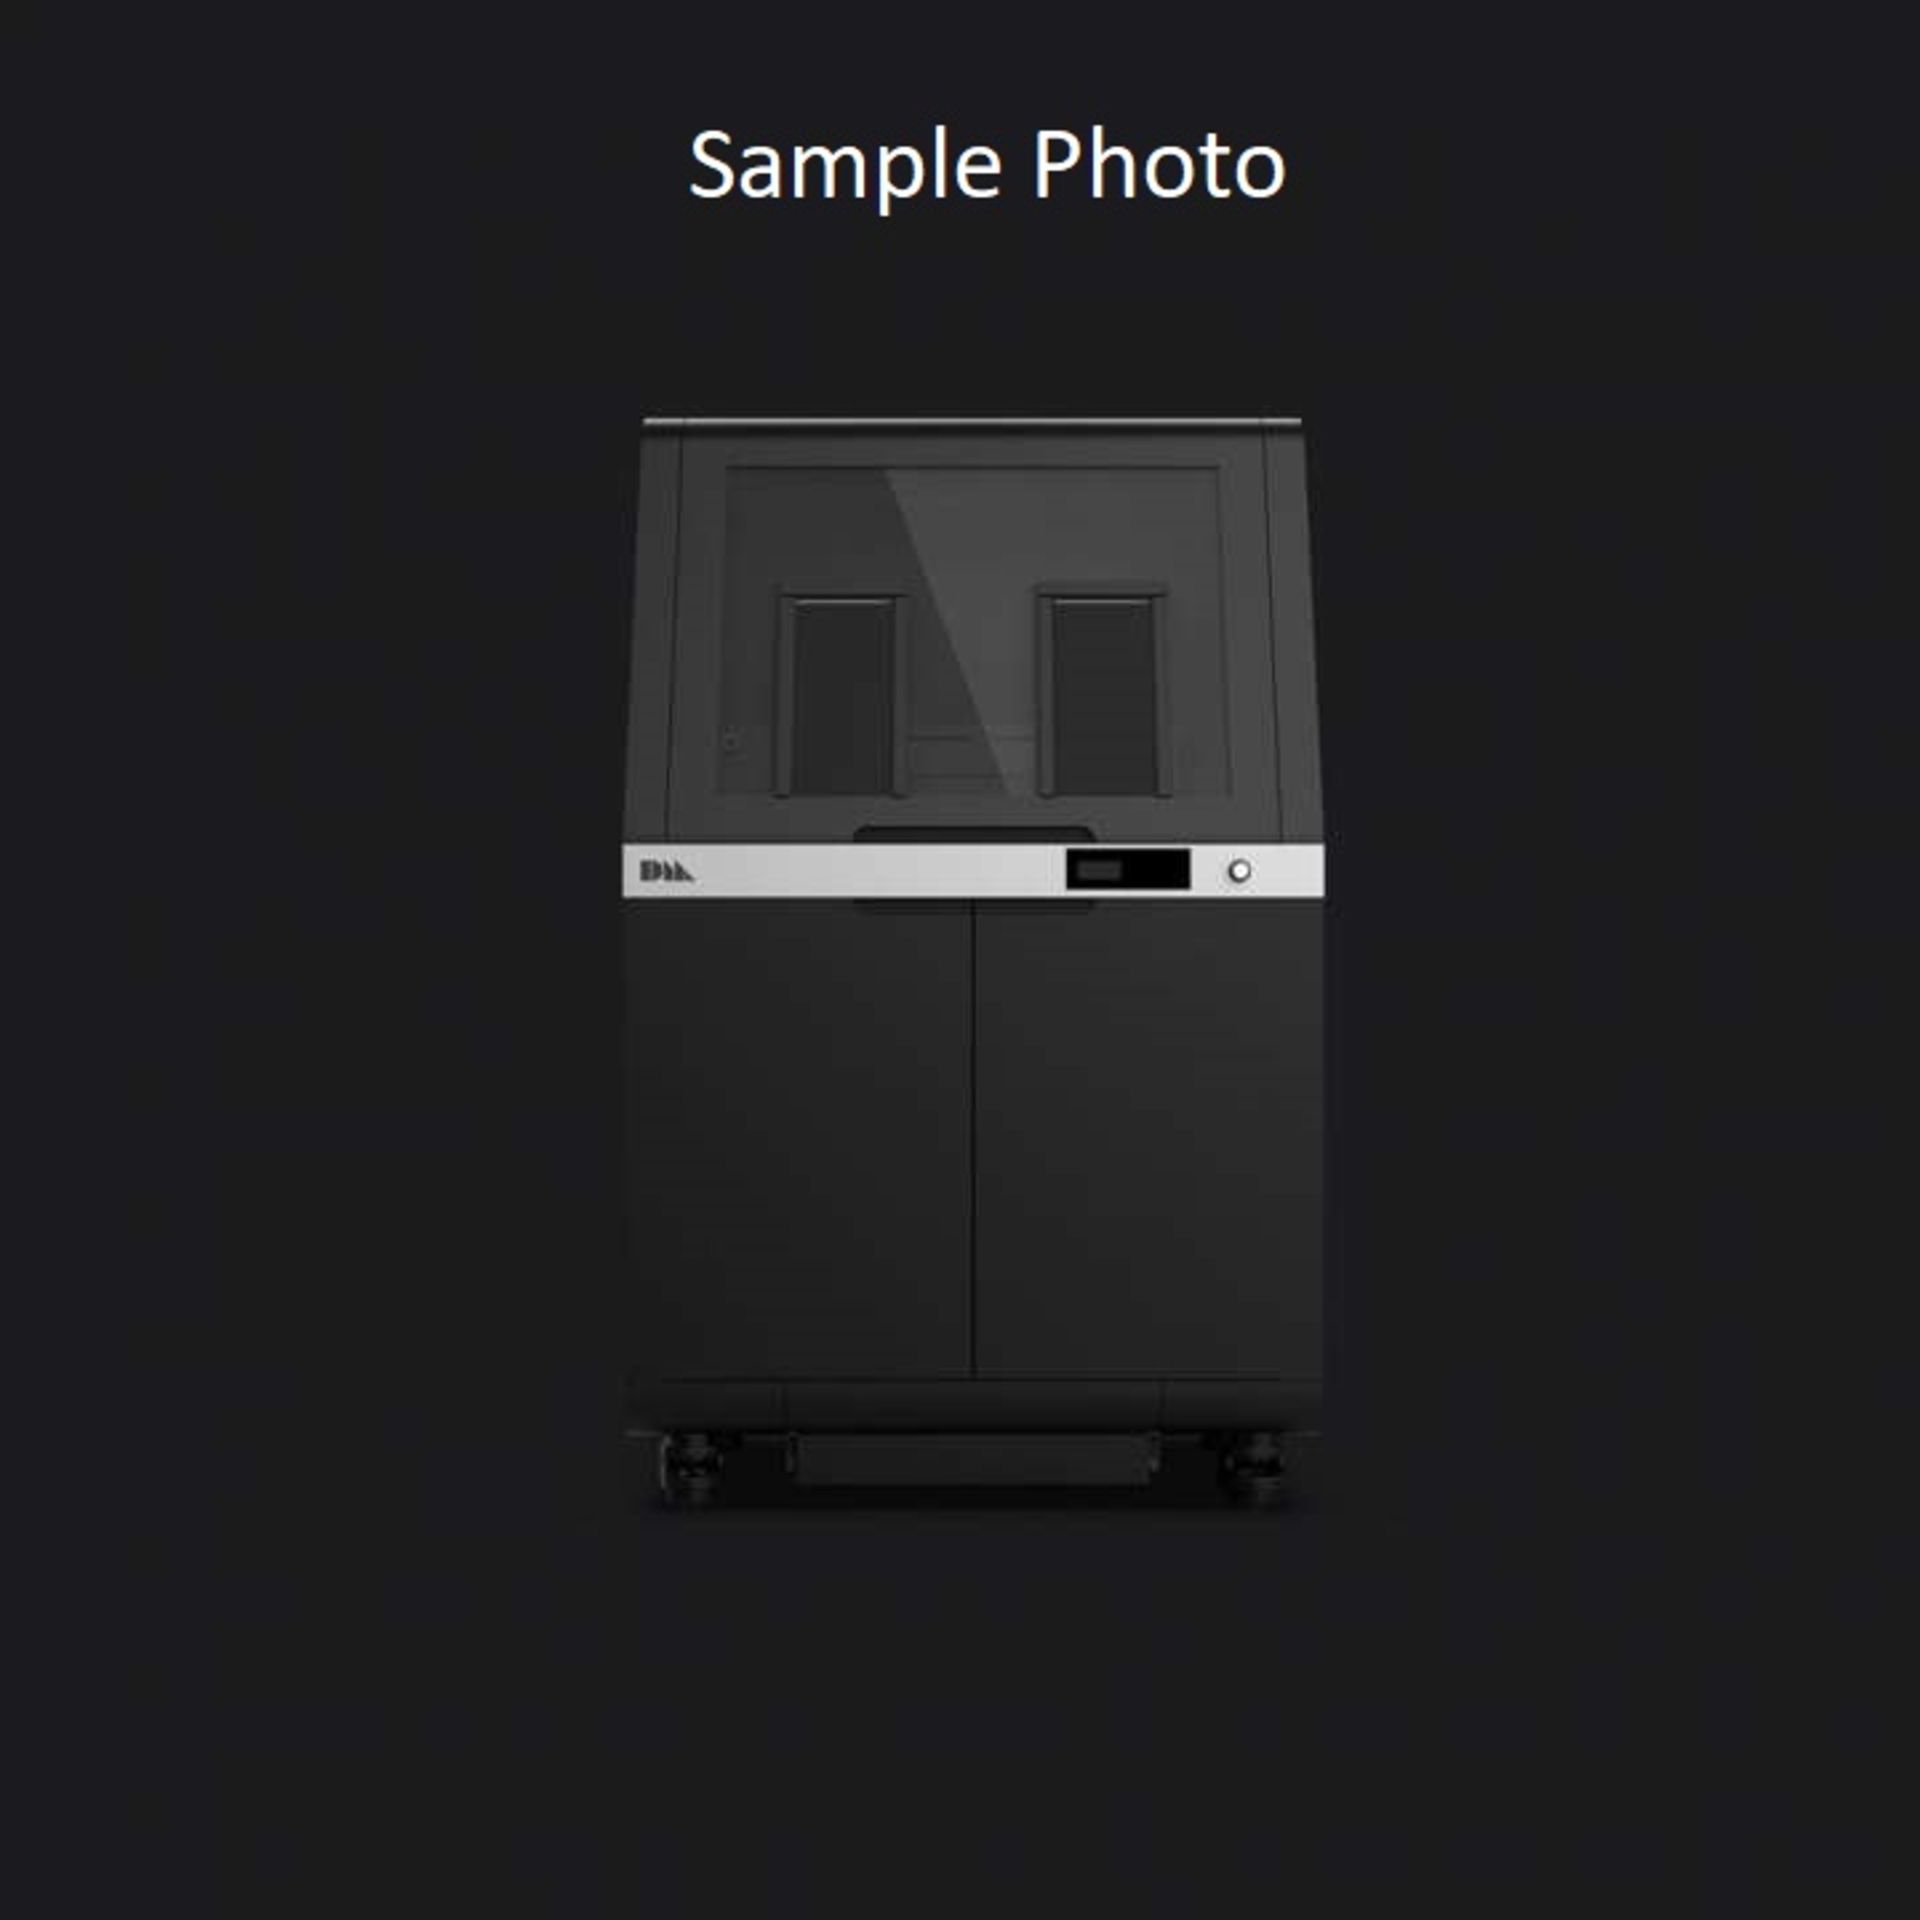 Desktop Metal Shop System Printers, Powder Station & Oven (New) - Image 3 of 17